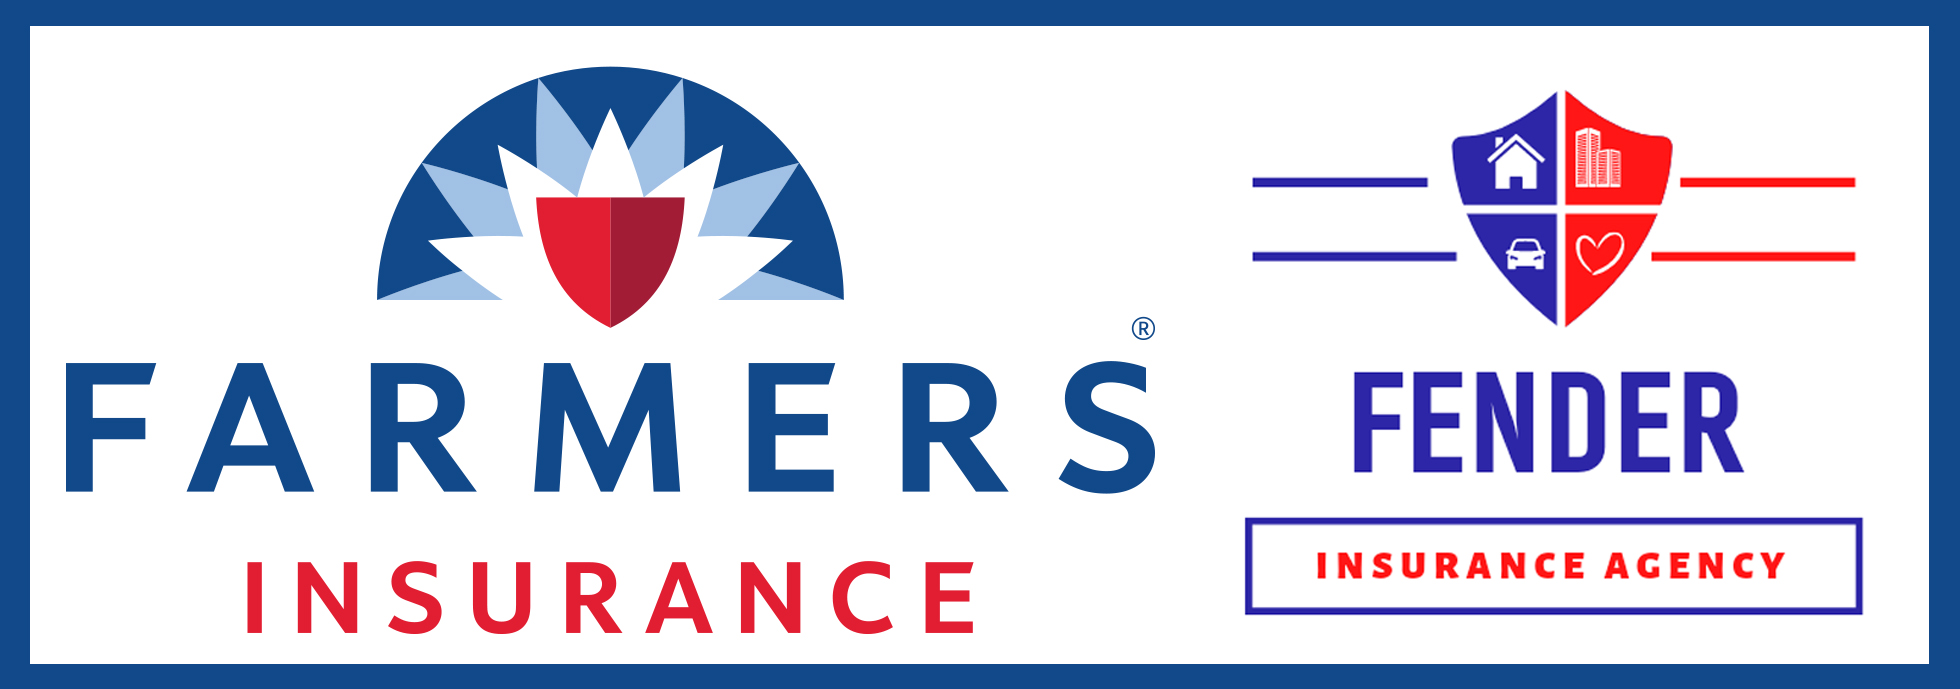 Fender Agency Farmers Insurance